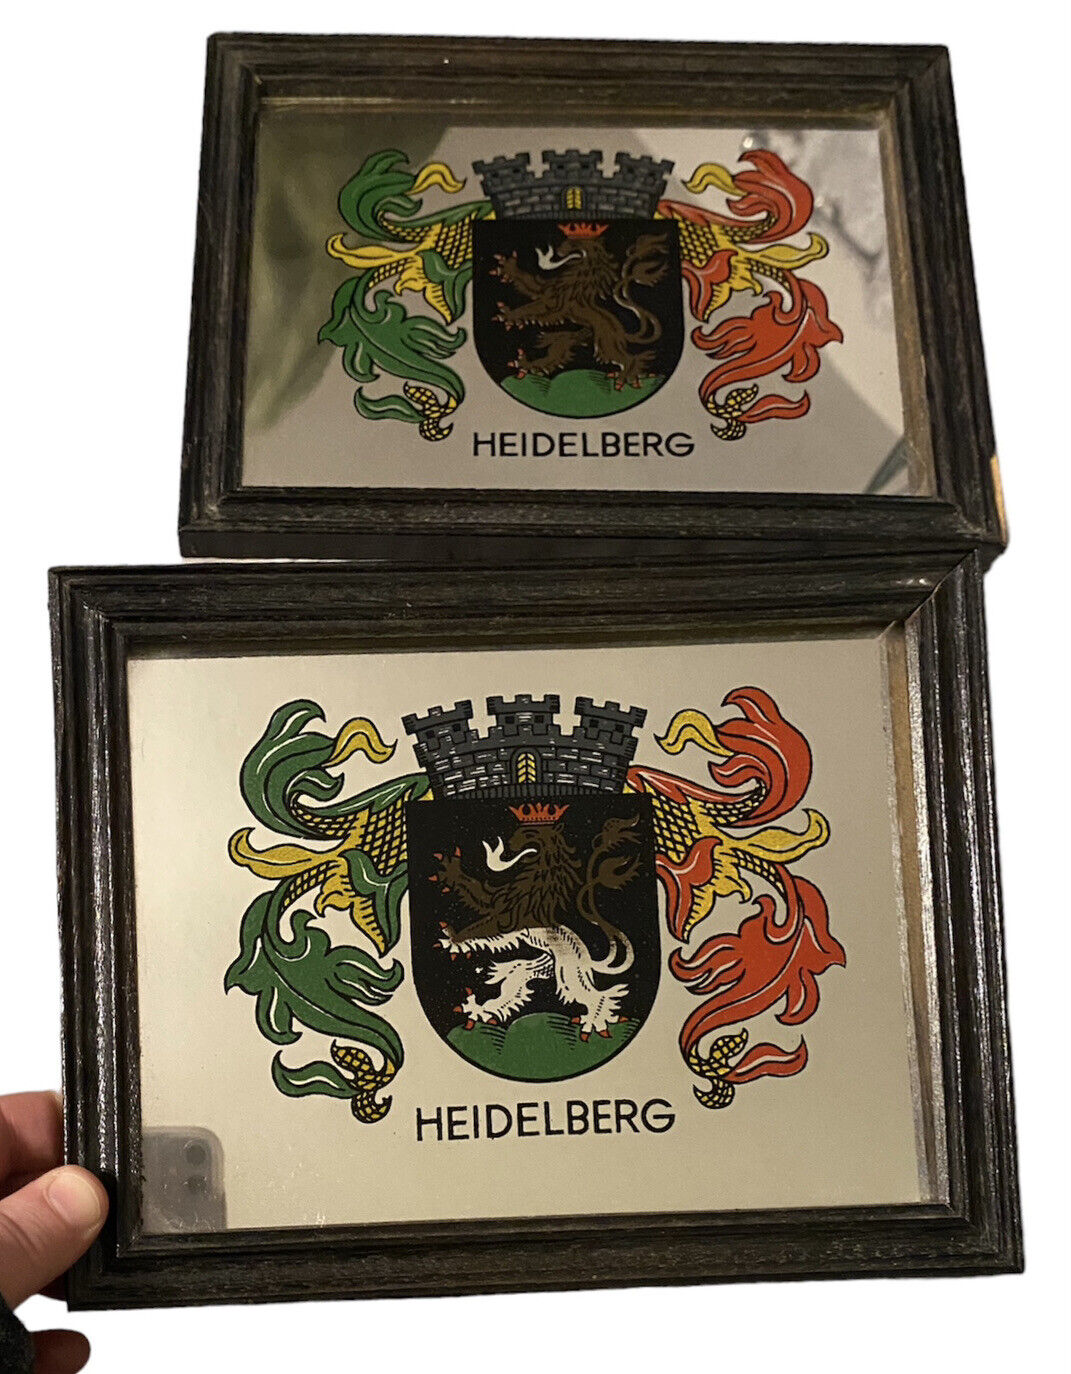 Heidelberg Beer Mirrored Signs Lion Coat of Arms Vintage Art Germany Set Of 2